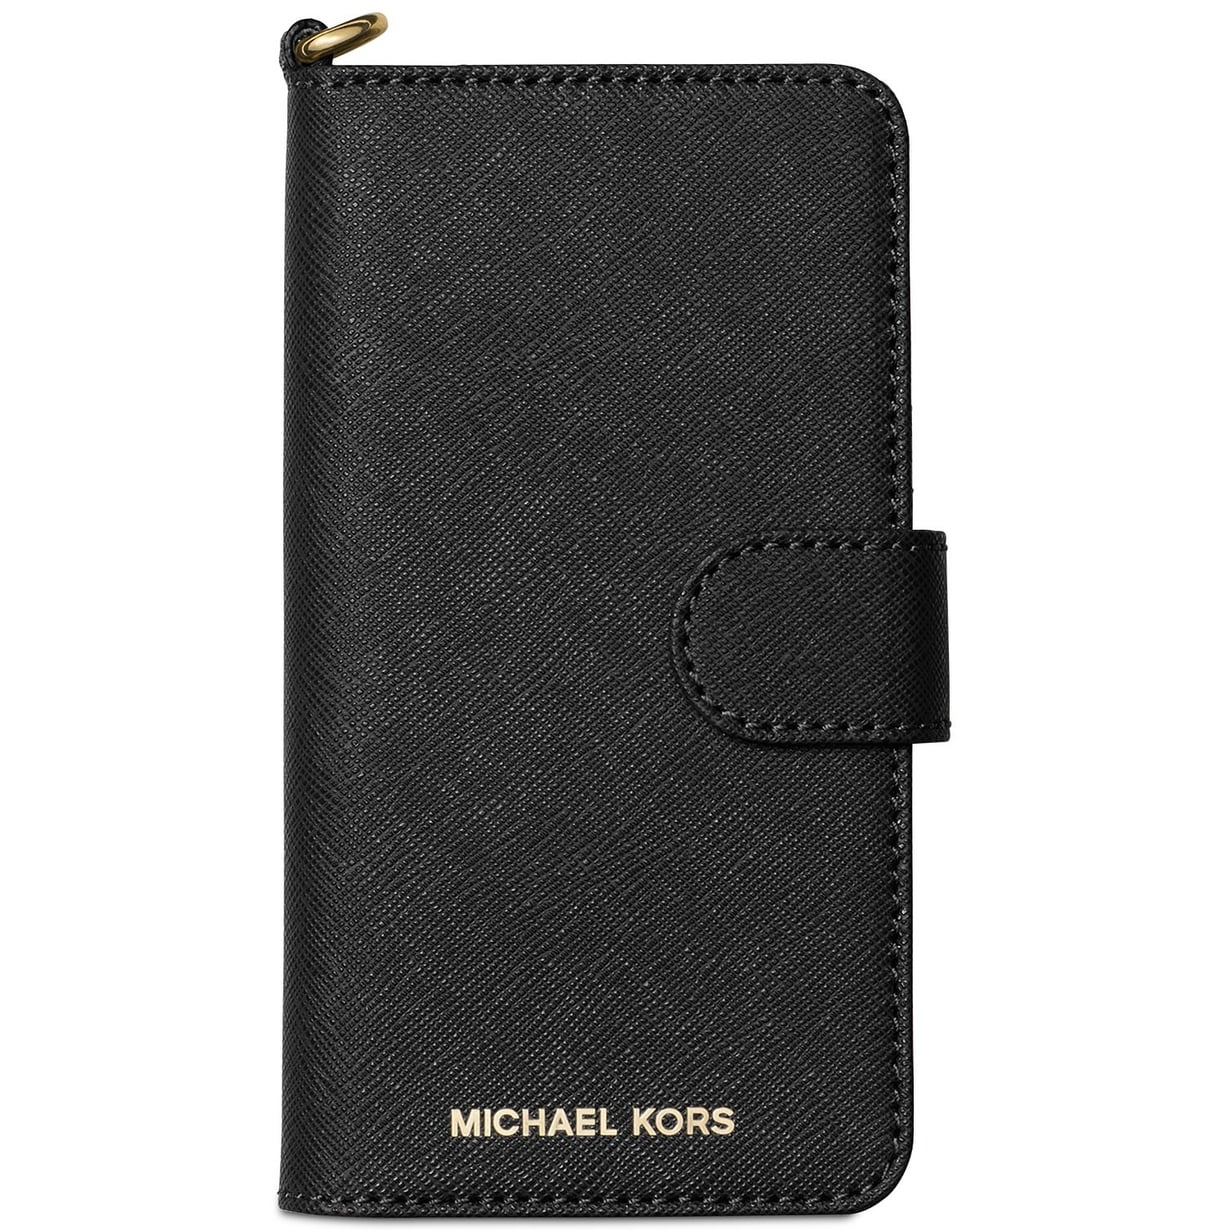 michael kors iphone 8 wallet case